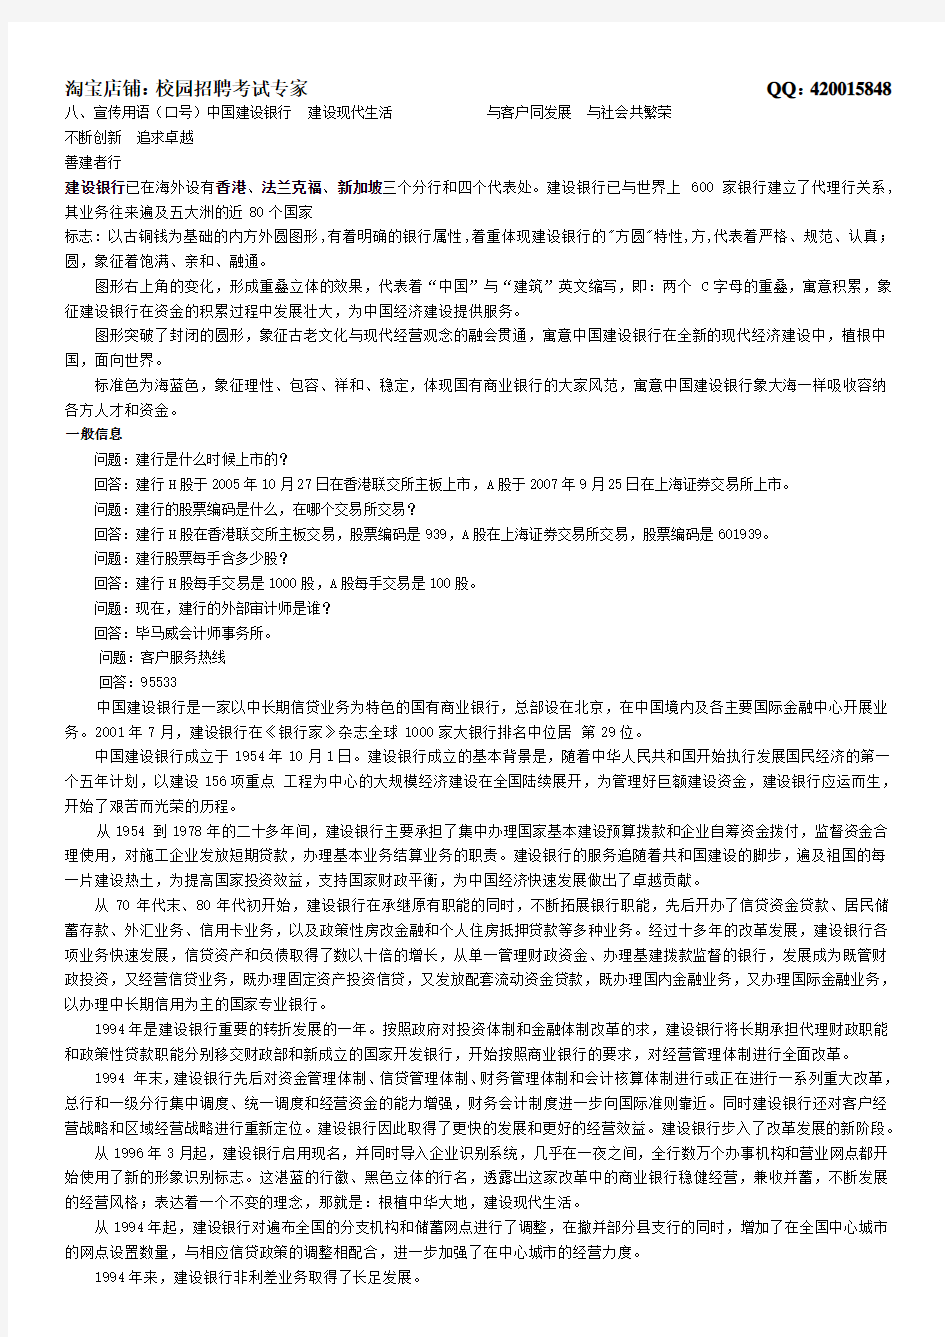 中国建设银行简介及背景知识(4页)无需打印,了解即可